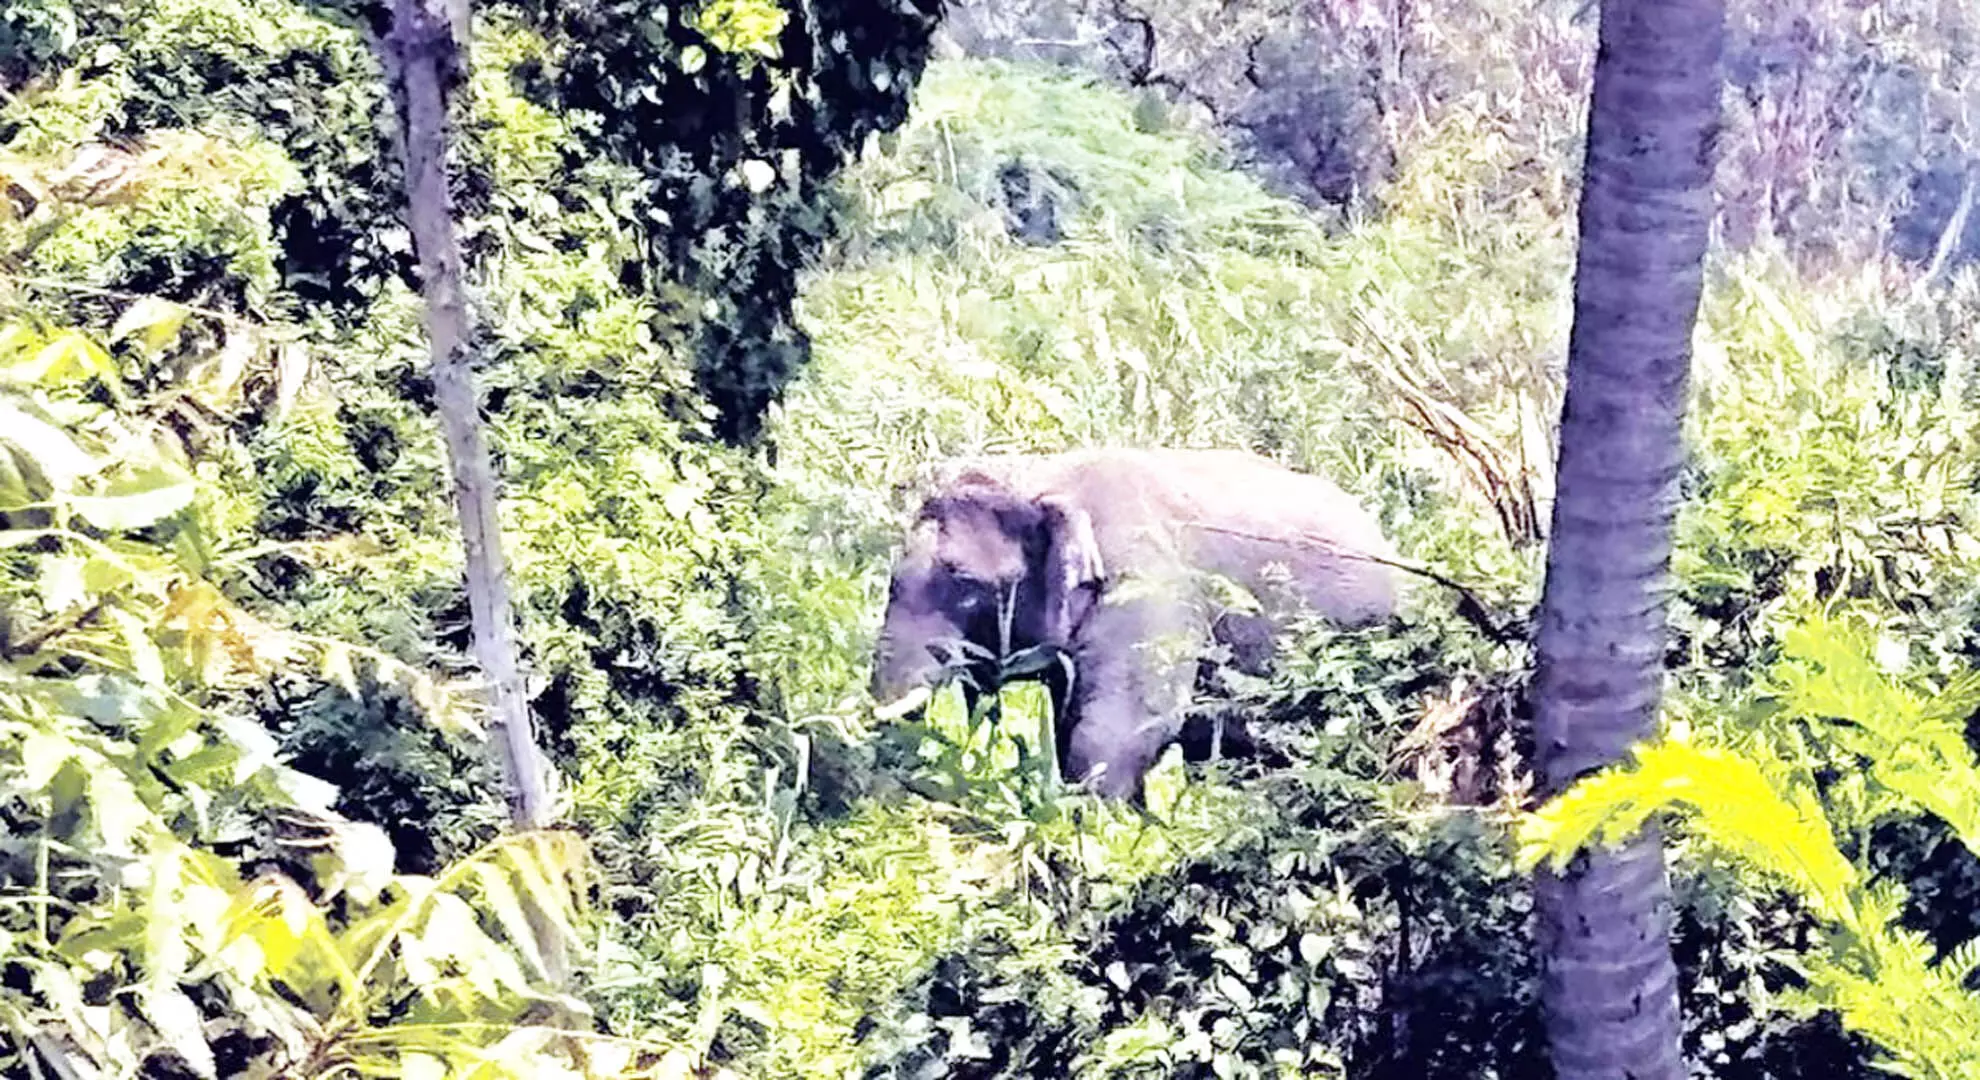 धर्मपुरी के पास घनी आबादी वाले इलाके में घुसा जंगली हाथी; शांत करना जोखिम भरा